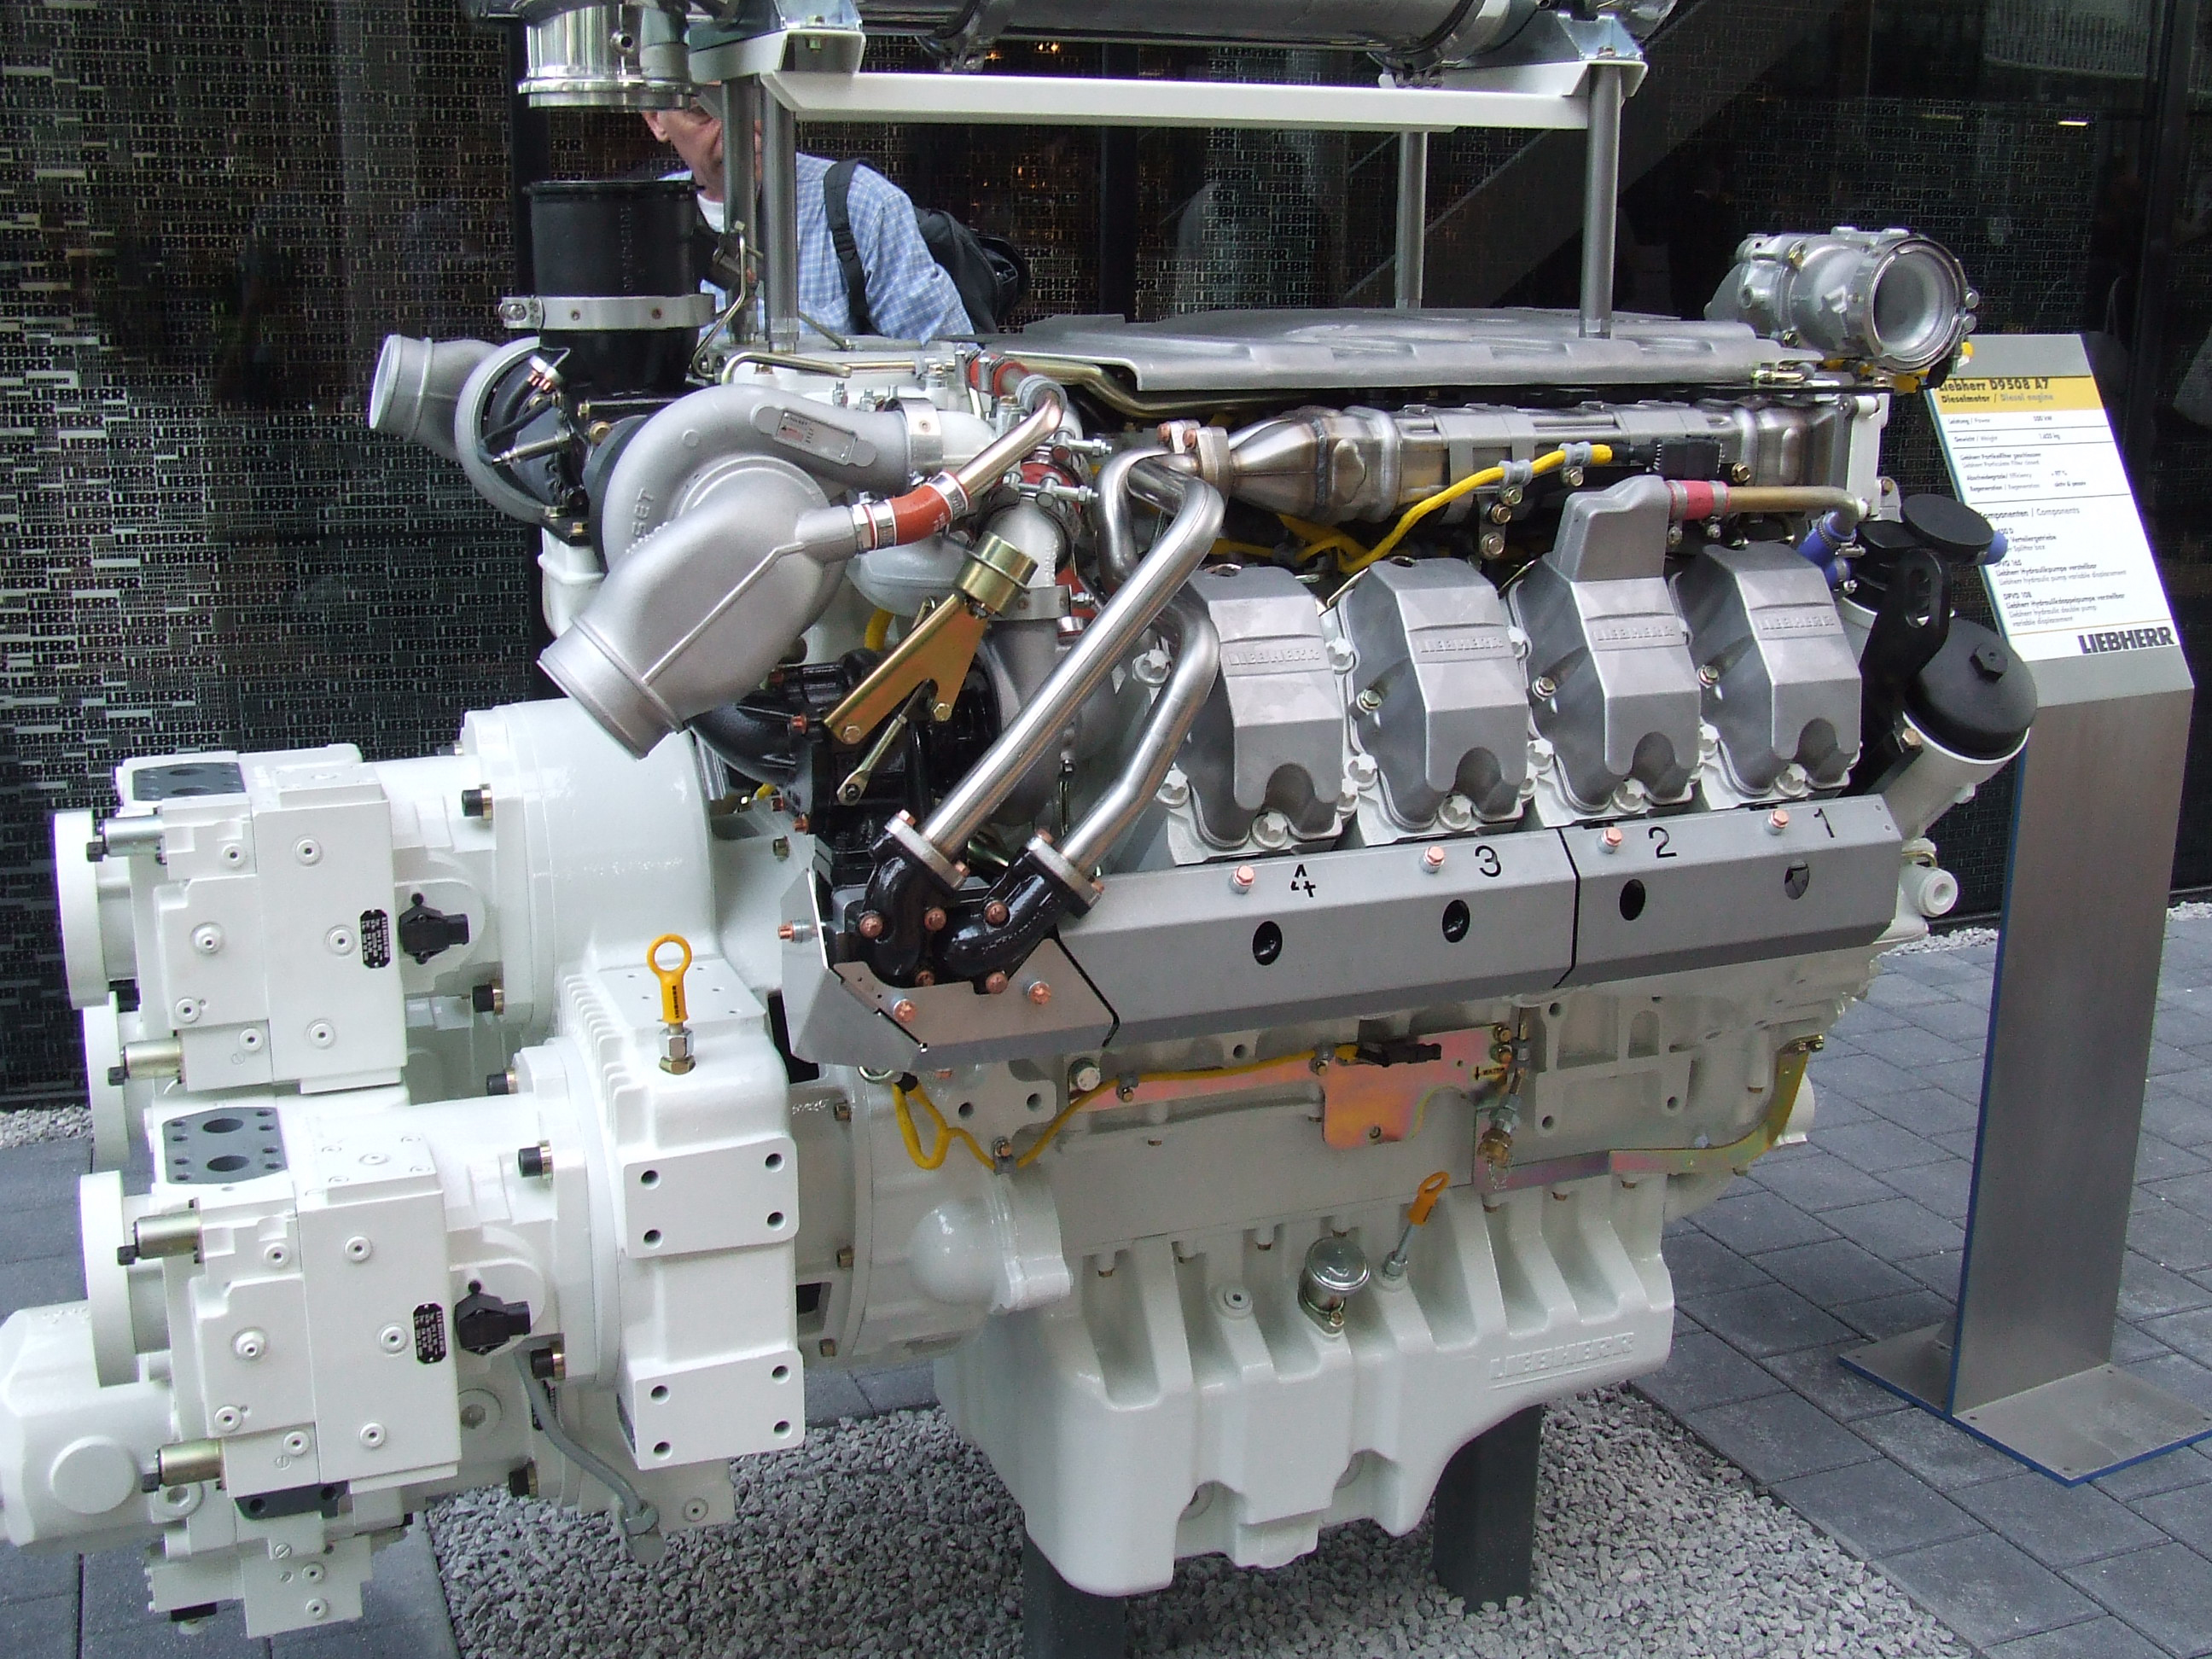 Liebherr Engine